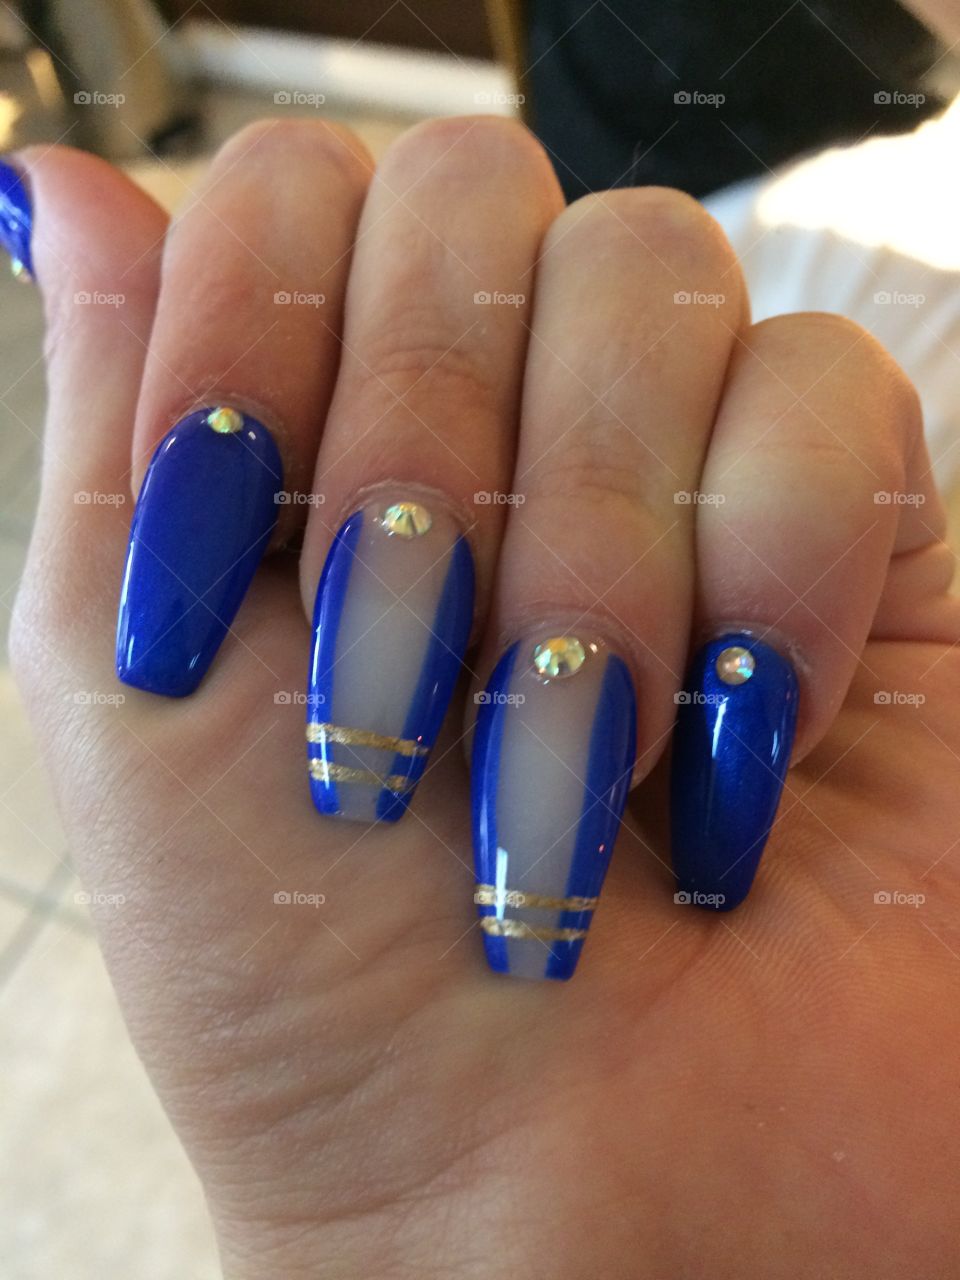 Last full set of nails I got beautiful 